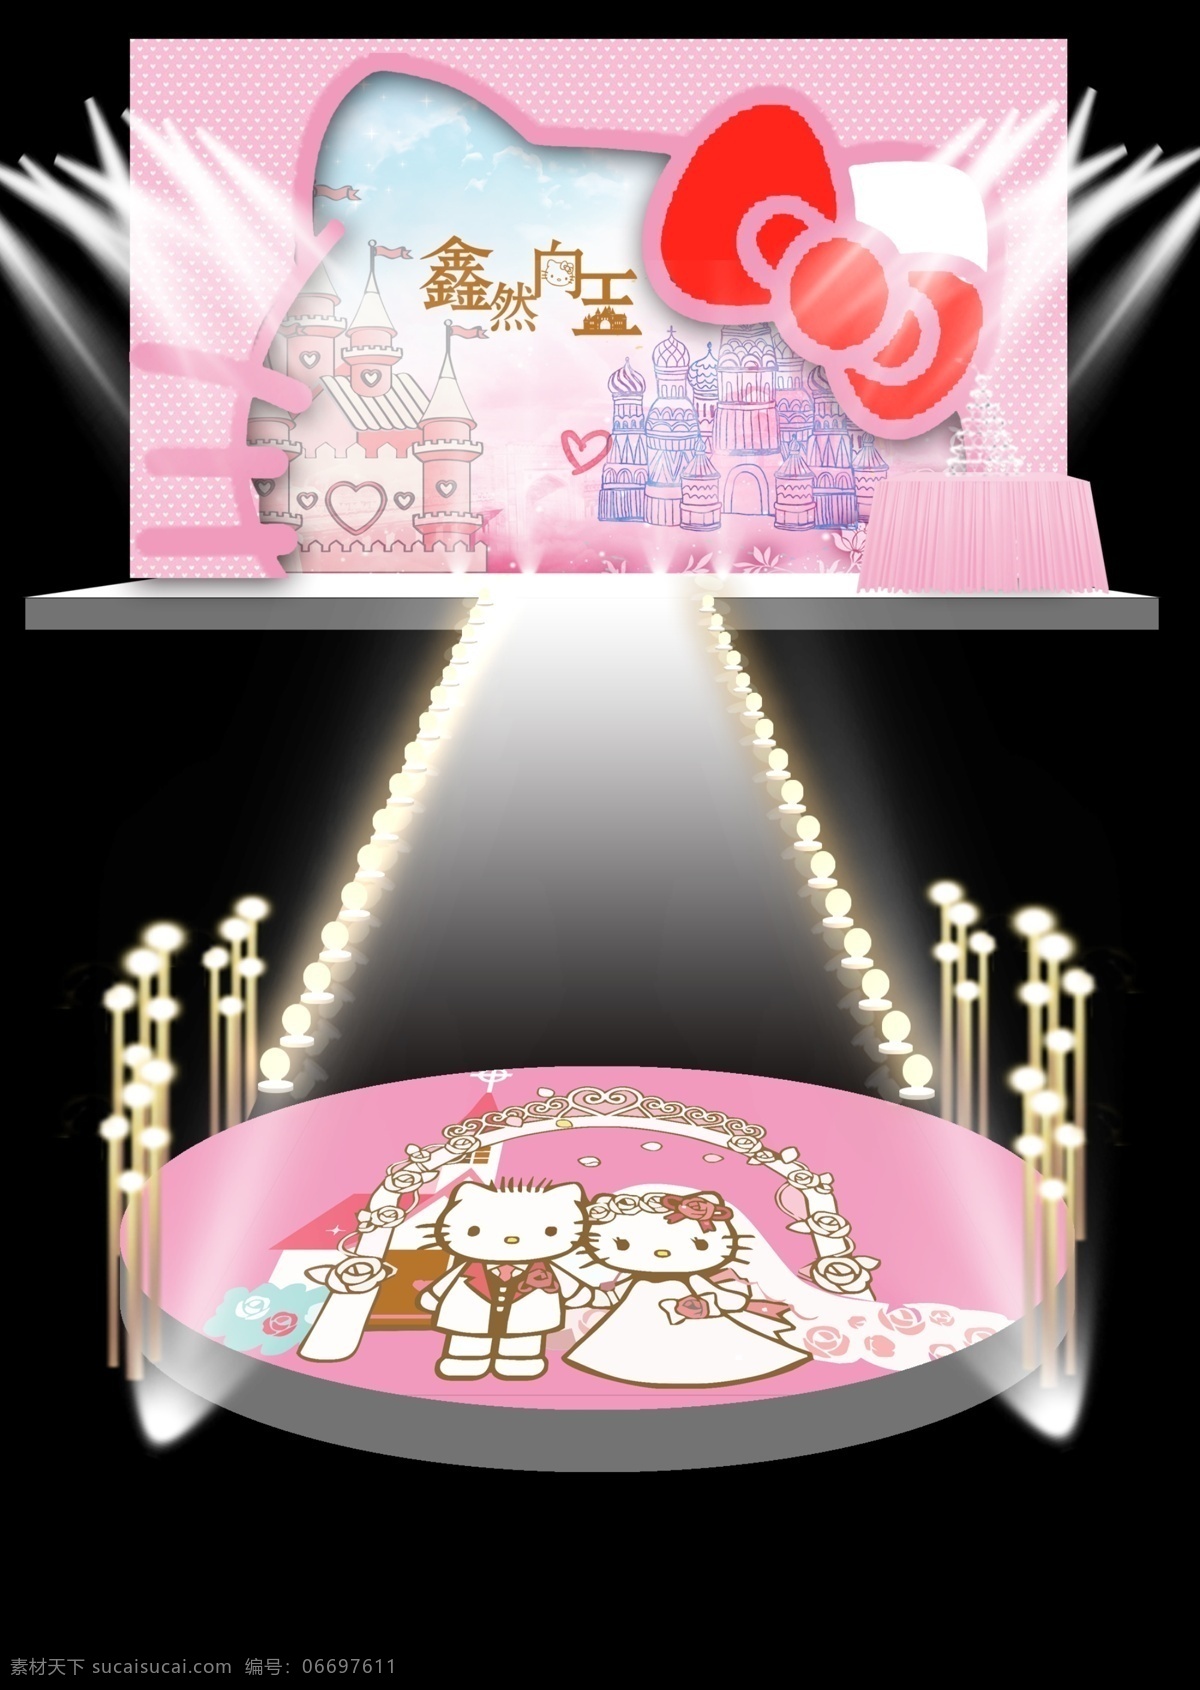 婚礼效果图 主题婚礼 凯蒂猫 龙珠灯 走马灯 kt 板 造型 粉色 黑色